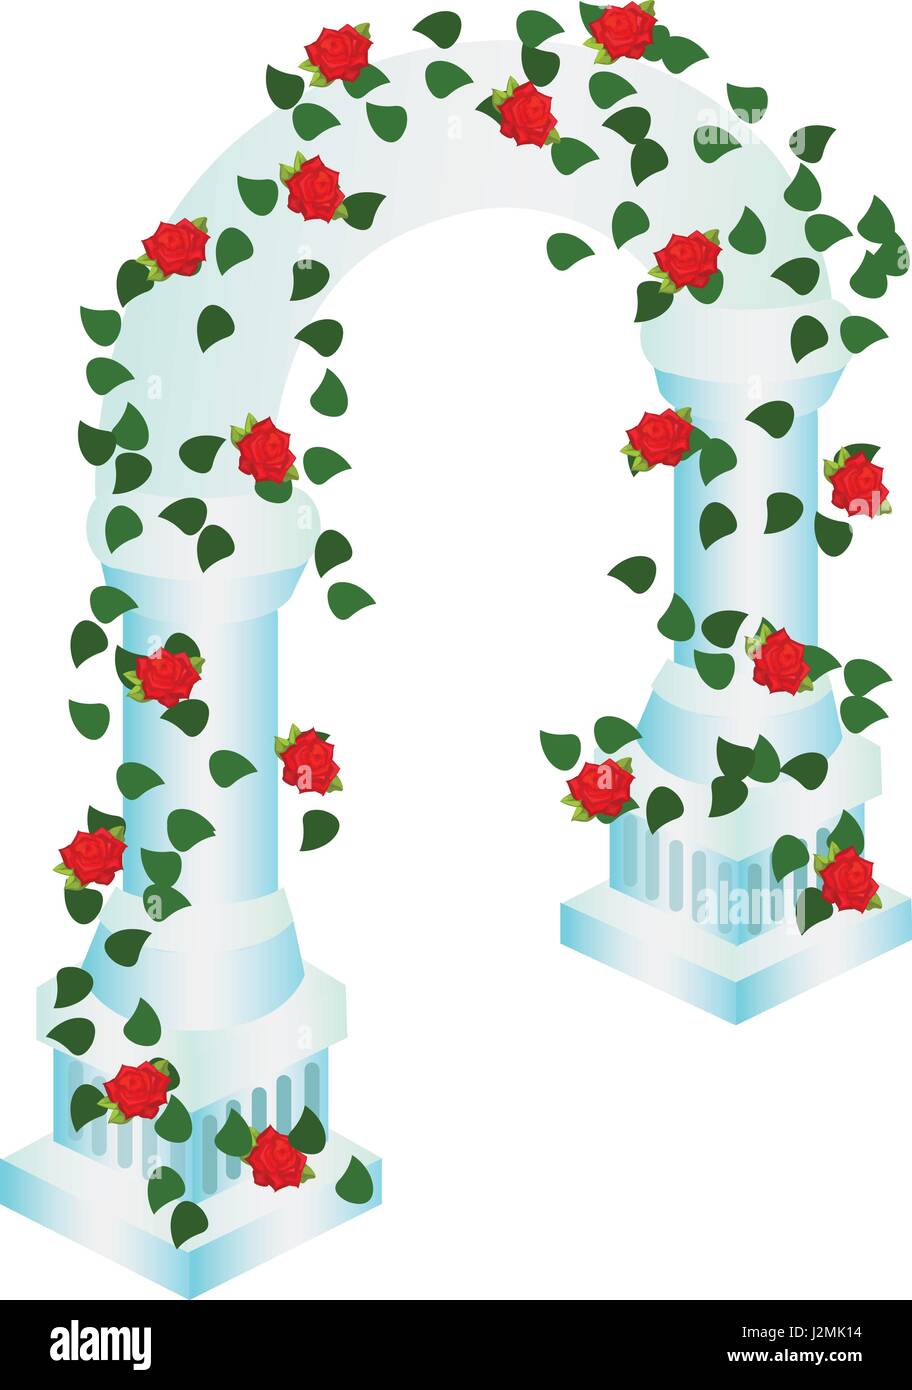 Isometrische Cartoon Hochzeitszeremonie Bogen Kuppel mit roten Rosen und grünen verziert Blätter Stock Vektor